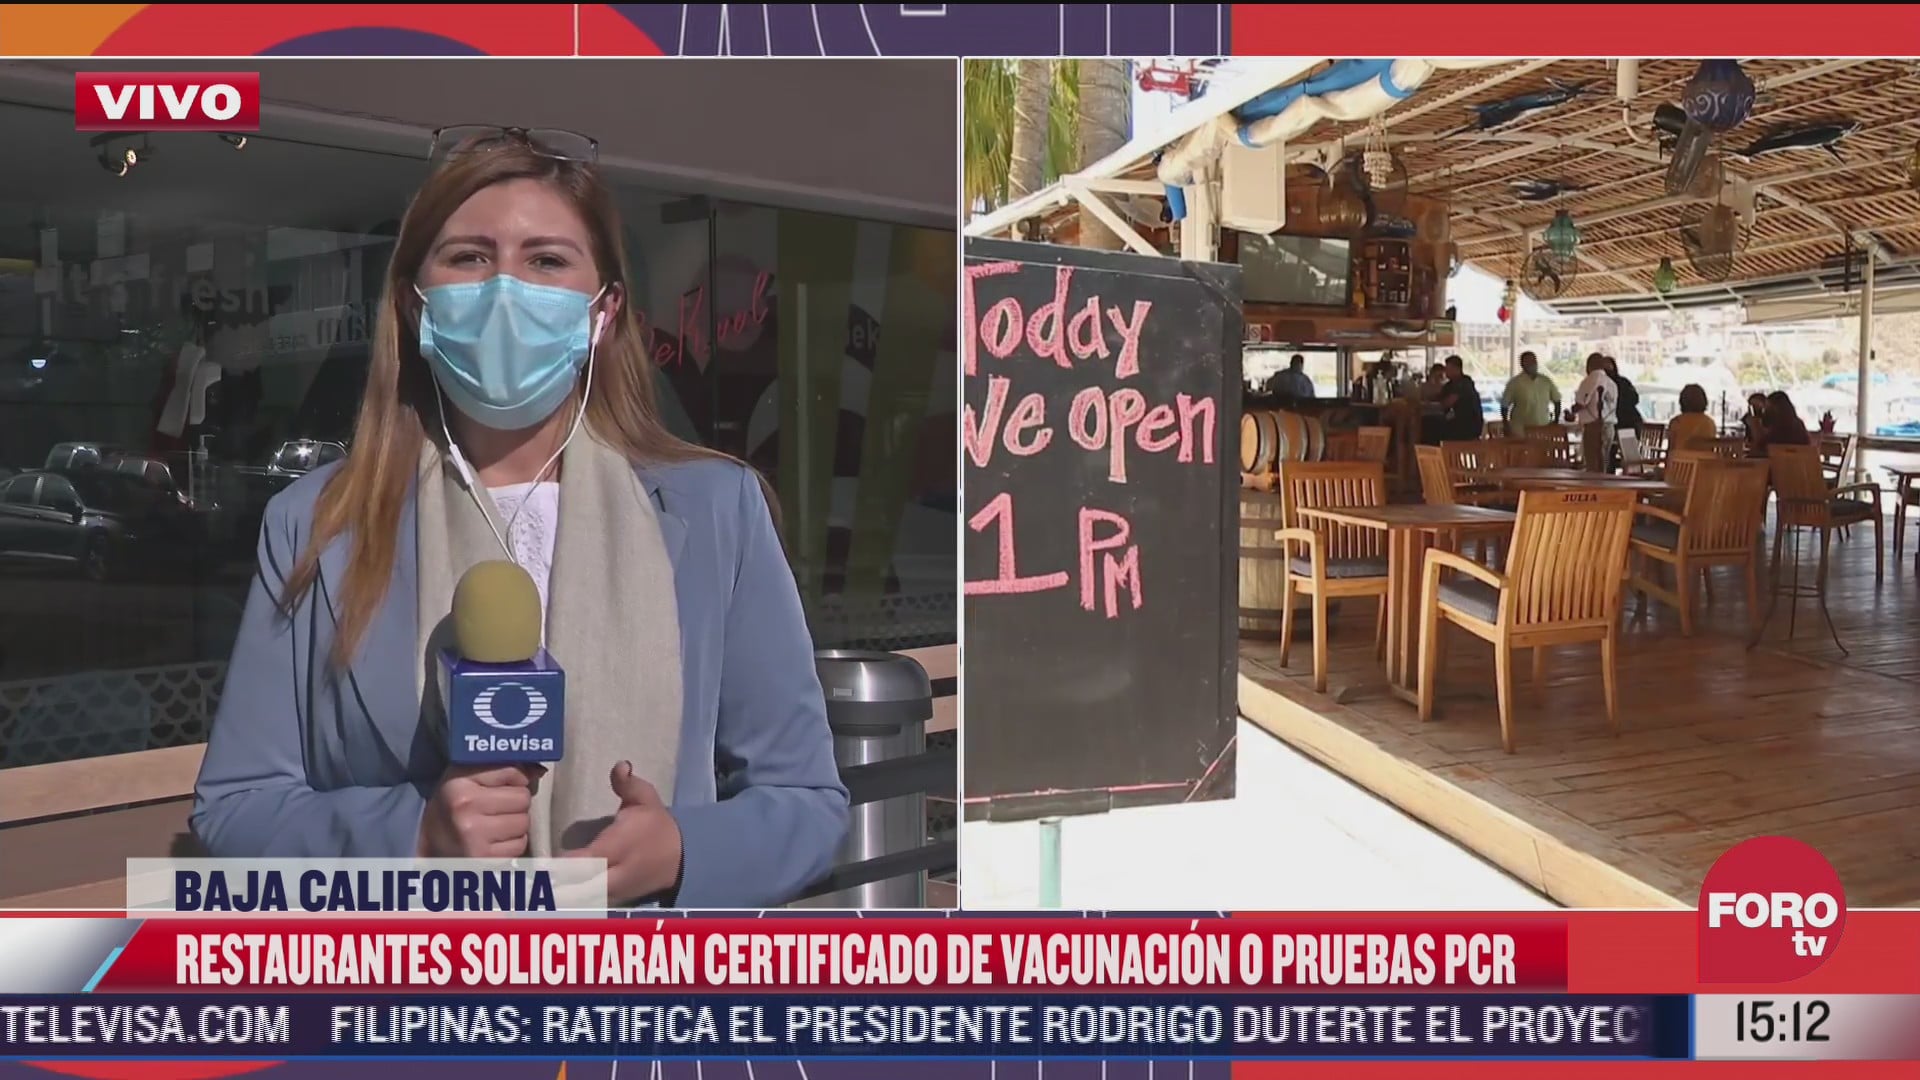 restaurantes solicitaran certificado de vacunacion en baja california